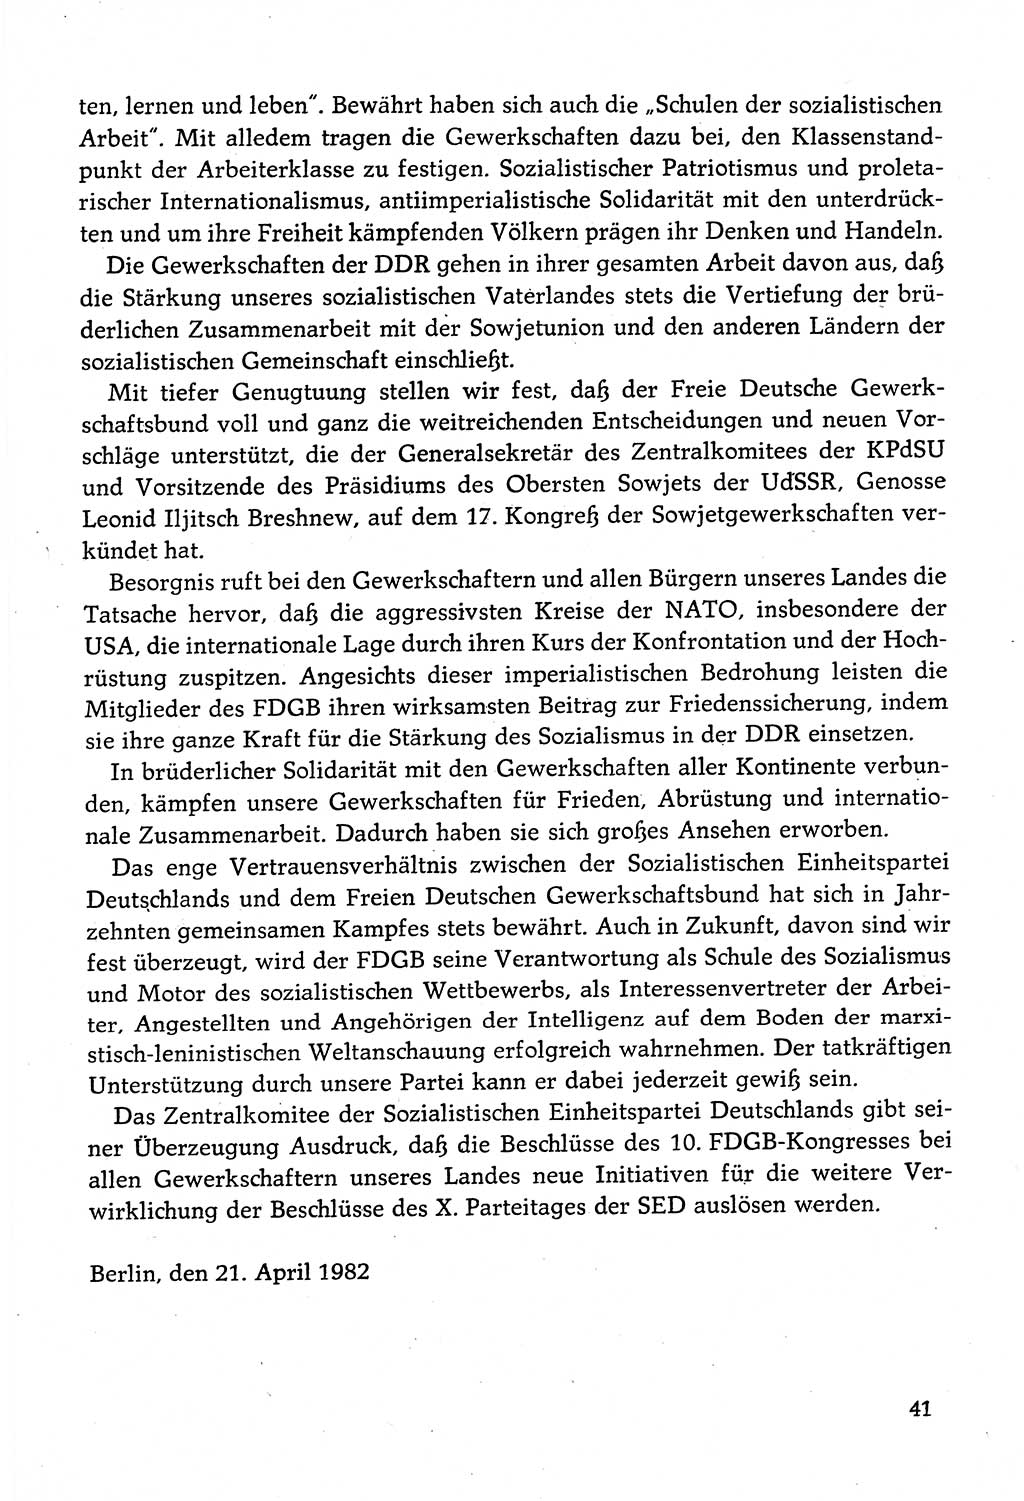 Dokumente der Sozialistischen Einheitspartei Deutschlands (SED) [Deutsche Demokratische Republik (DDR)] 1982-1983, Seite 41 (Dok. SED DDR 1982-1983, S. 41)